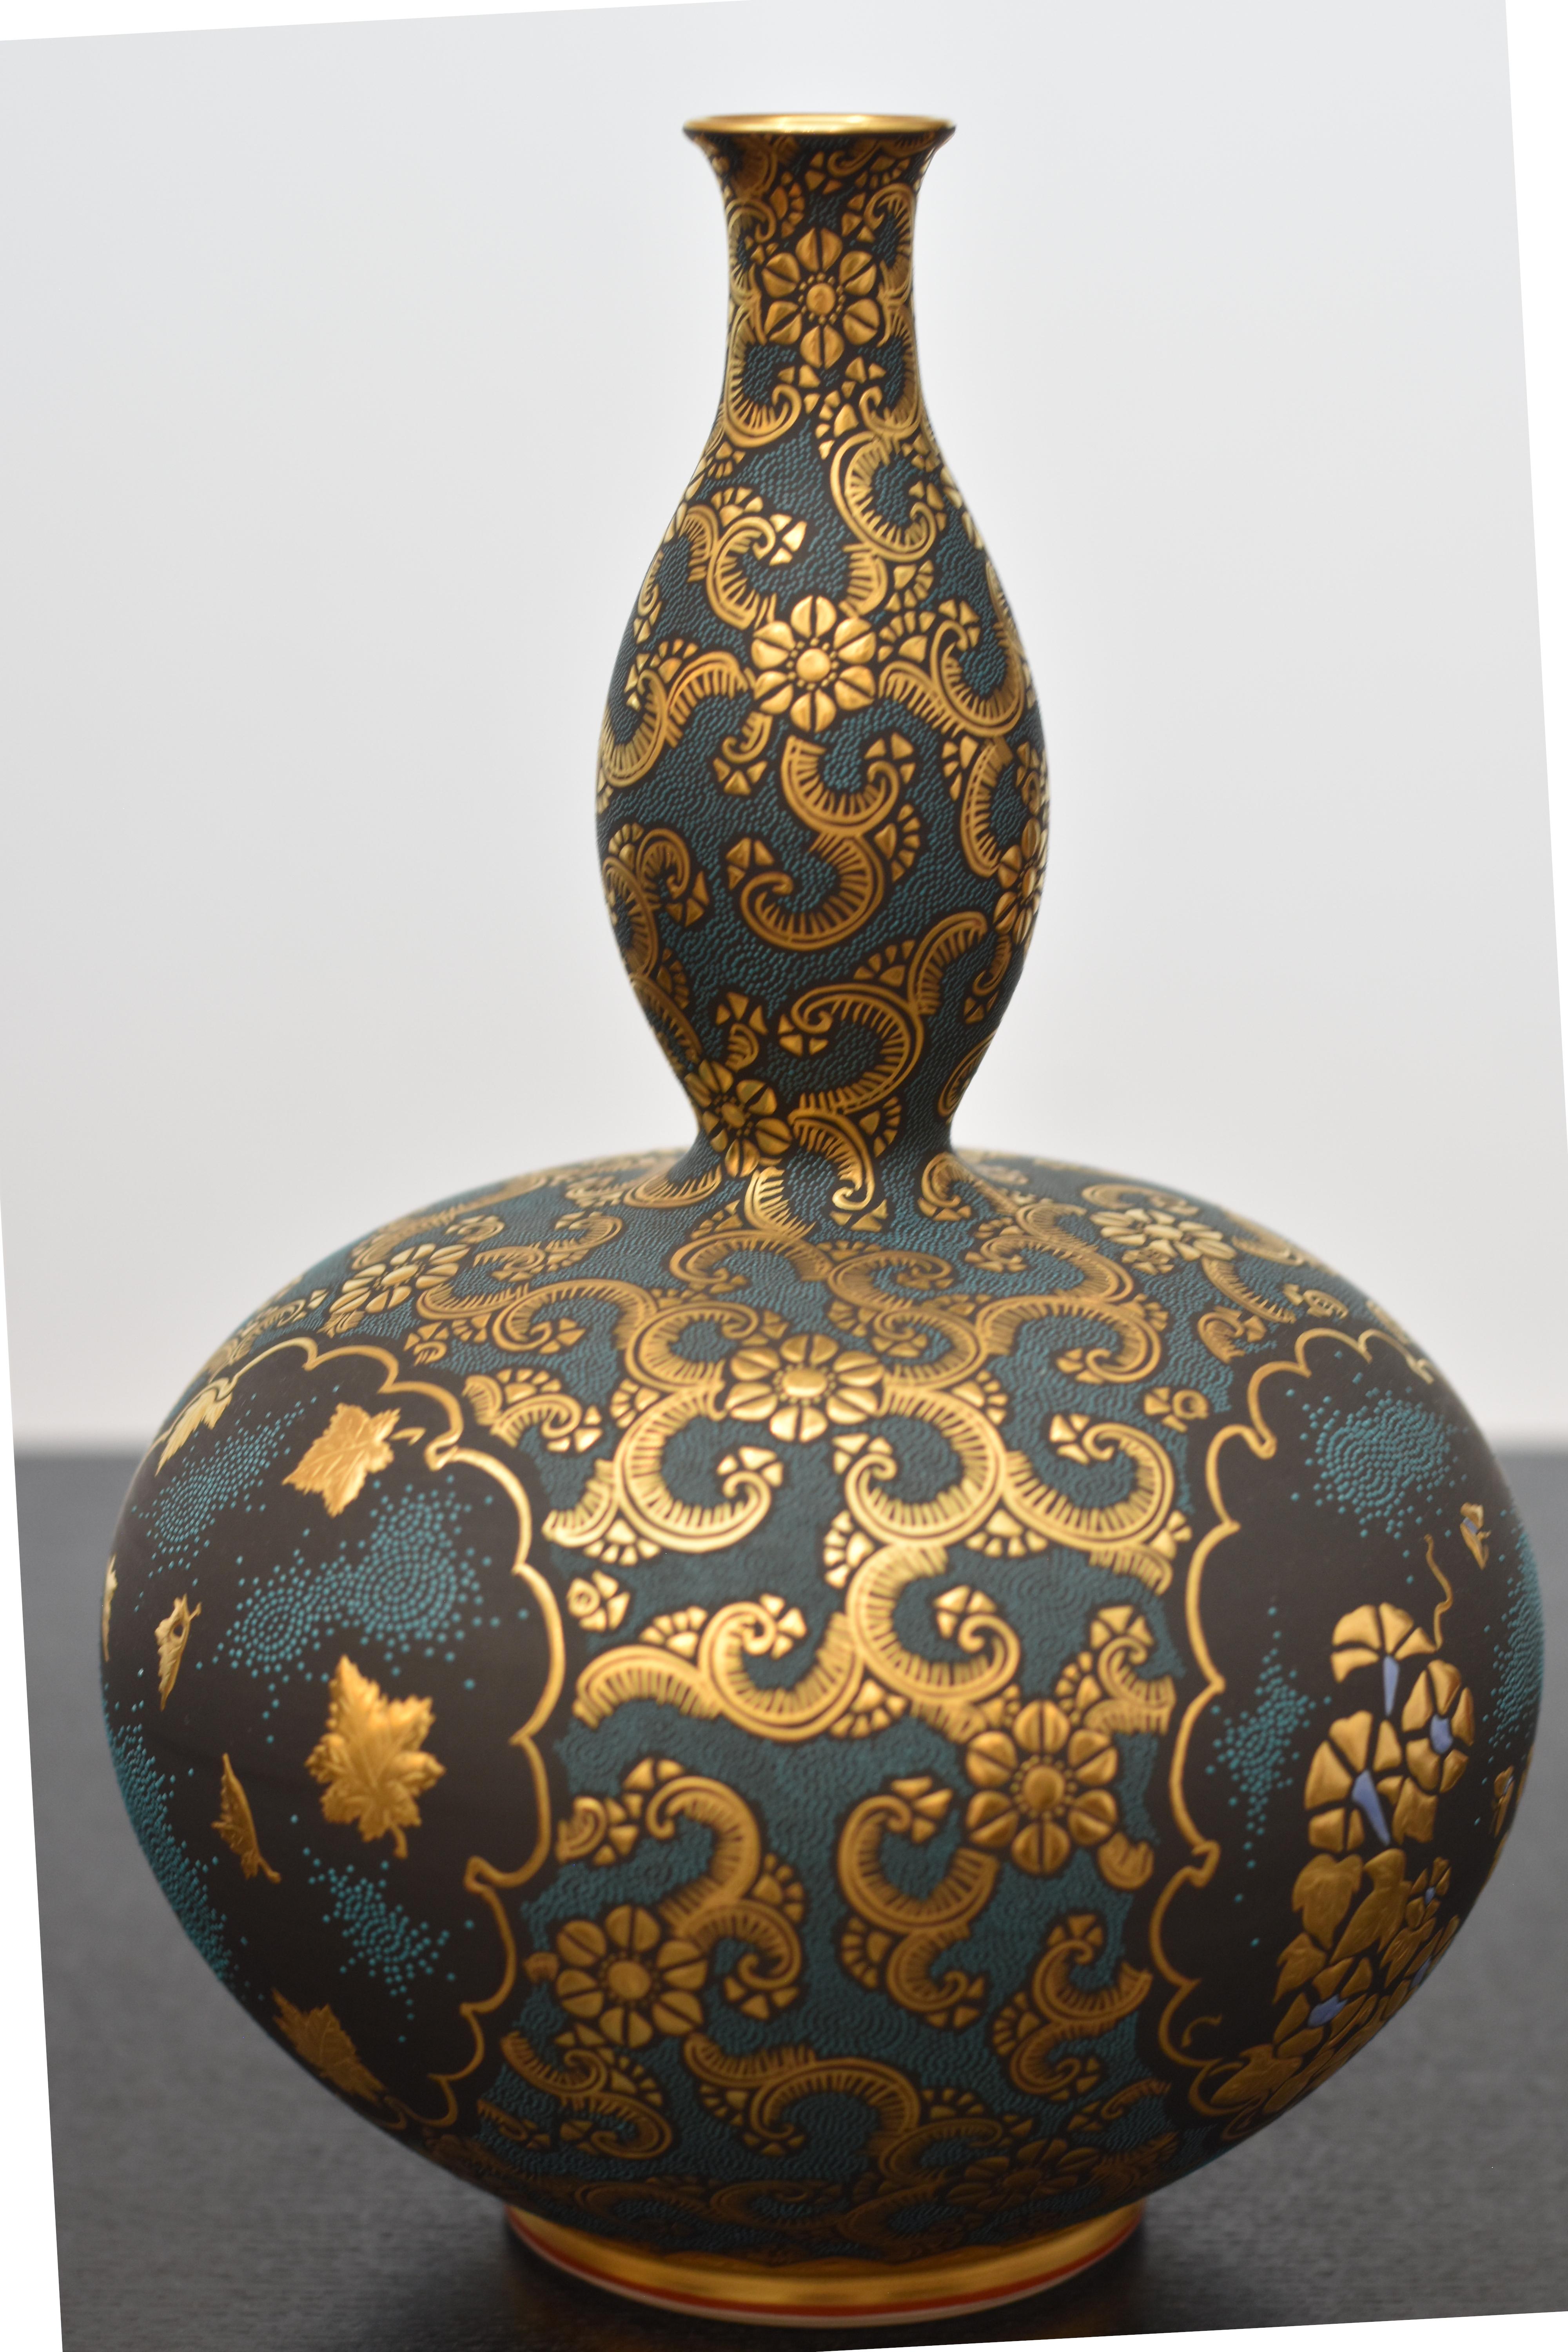 Außergewöhnliche japanische Vase aus zeitgenössischem Kutani-Porzellan in Museumsqualität, extrem aufwändig von Hand bemalt mit tiefblauen, erhabenen 